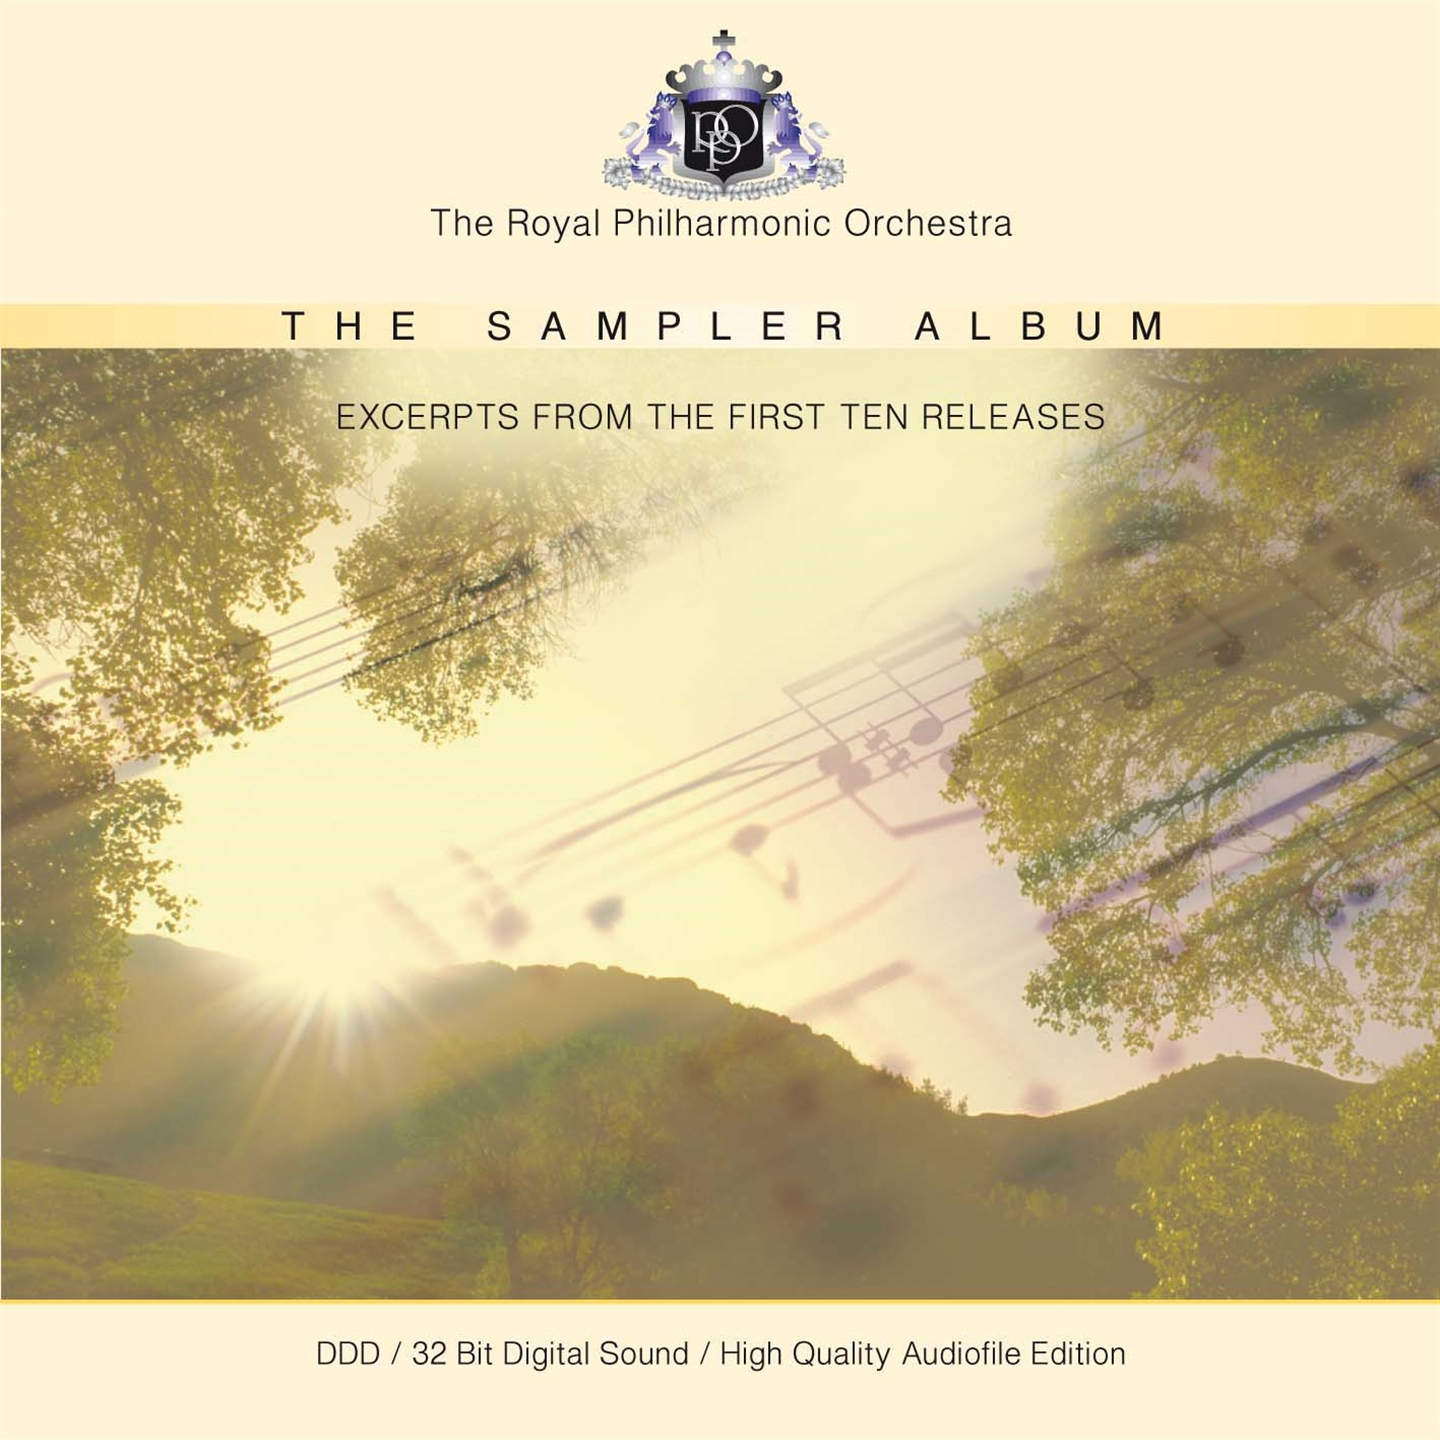 THE SAMPLER ALBUM